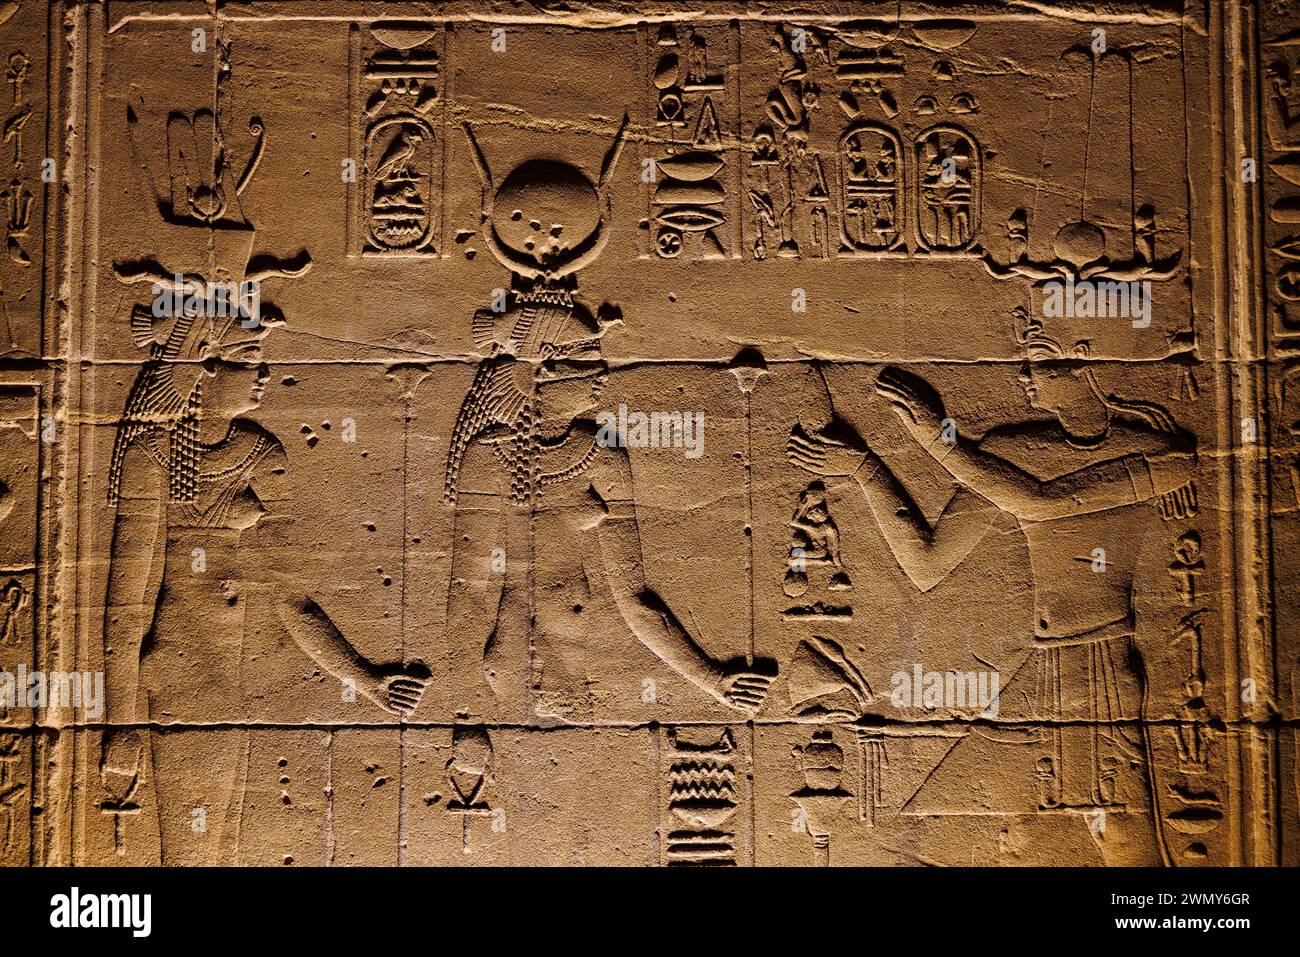 Ägypten, Assuan, nubische Denkmäler von Abu Simbel bis Philae, von der UNESCO zum Weltkulturerbe erklärt, Isis-Tempel in Philae, niedriges Relief an der Außenmauer des Heiligtums Stockfoto